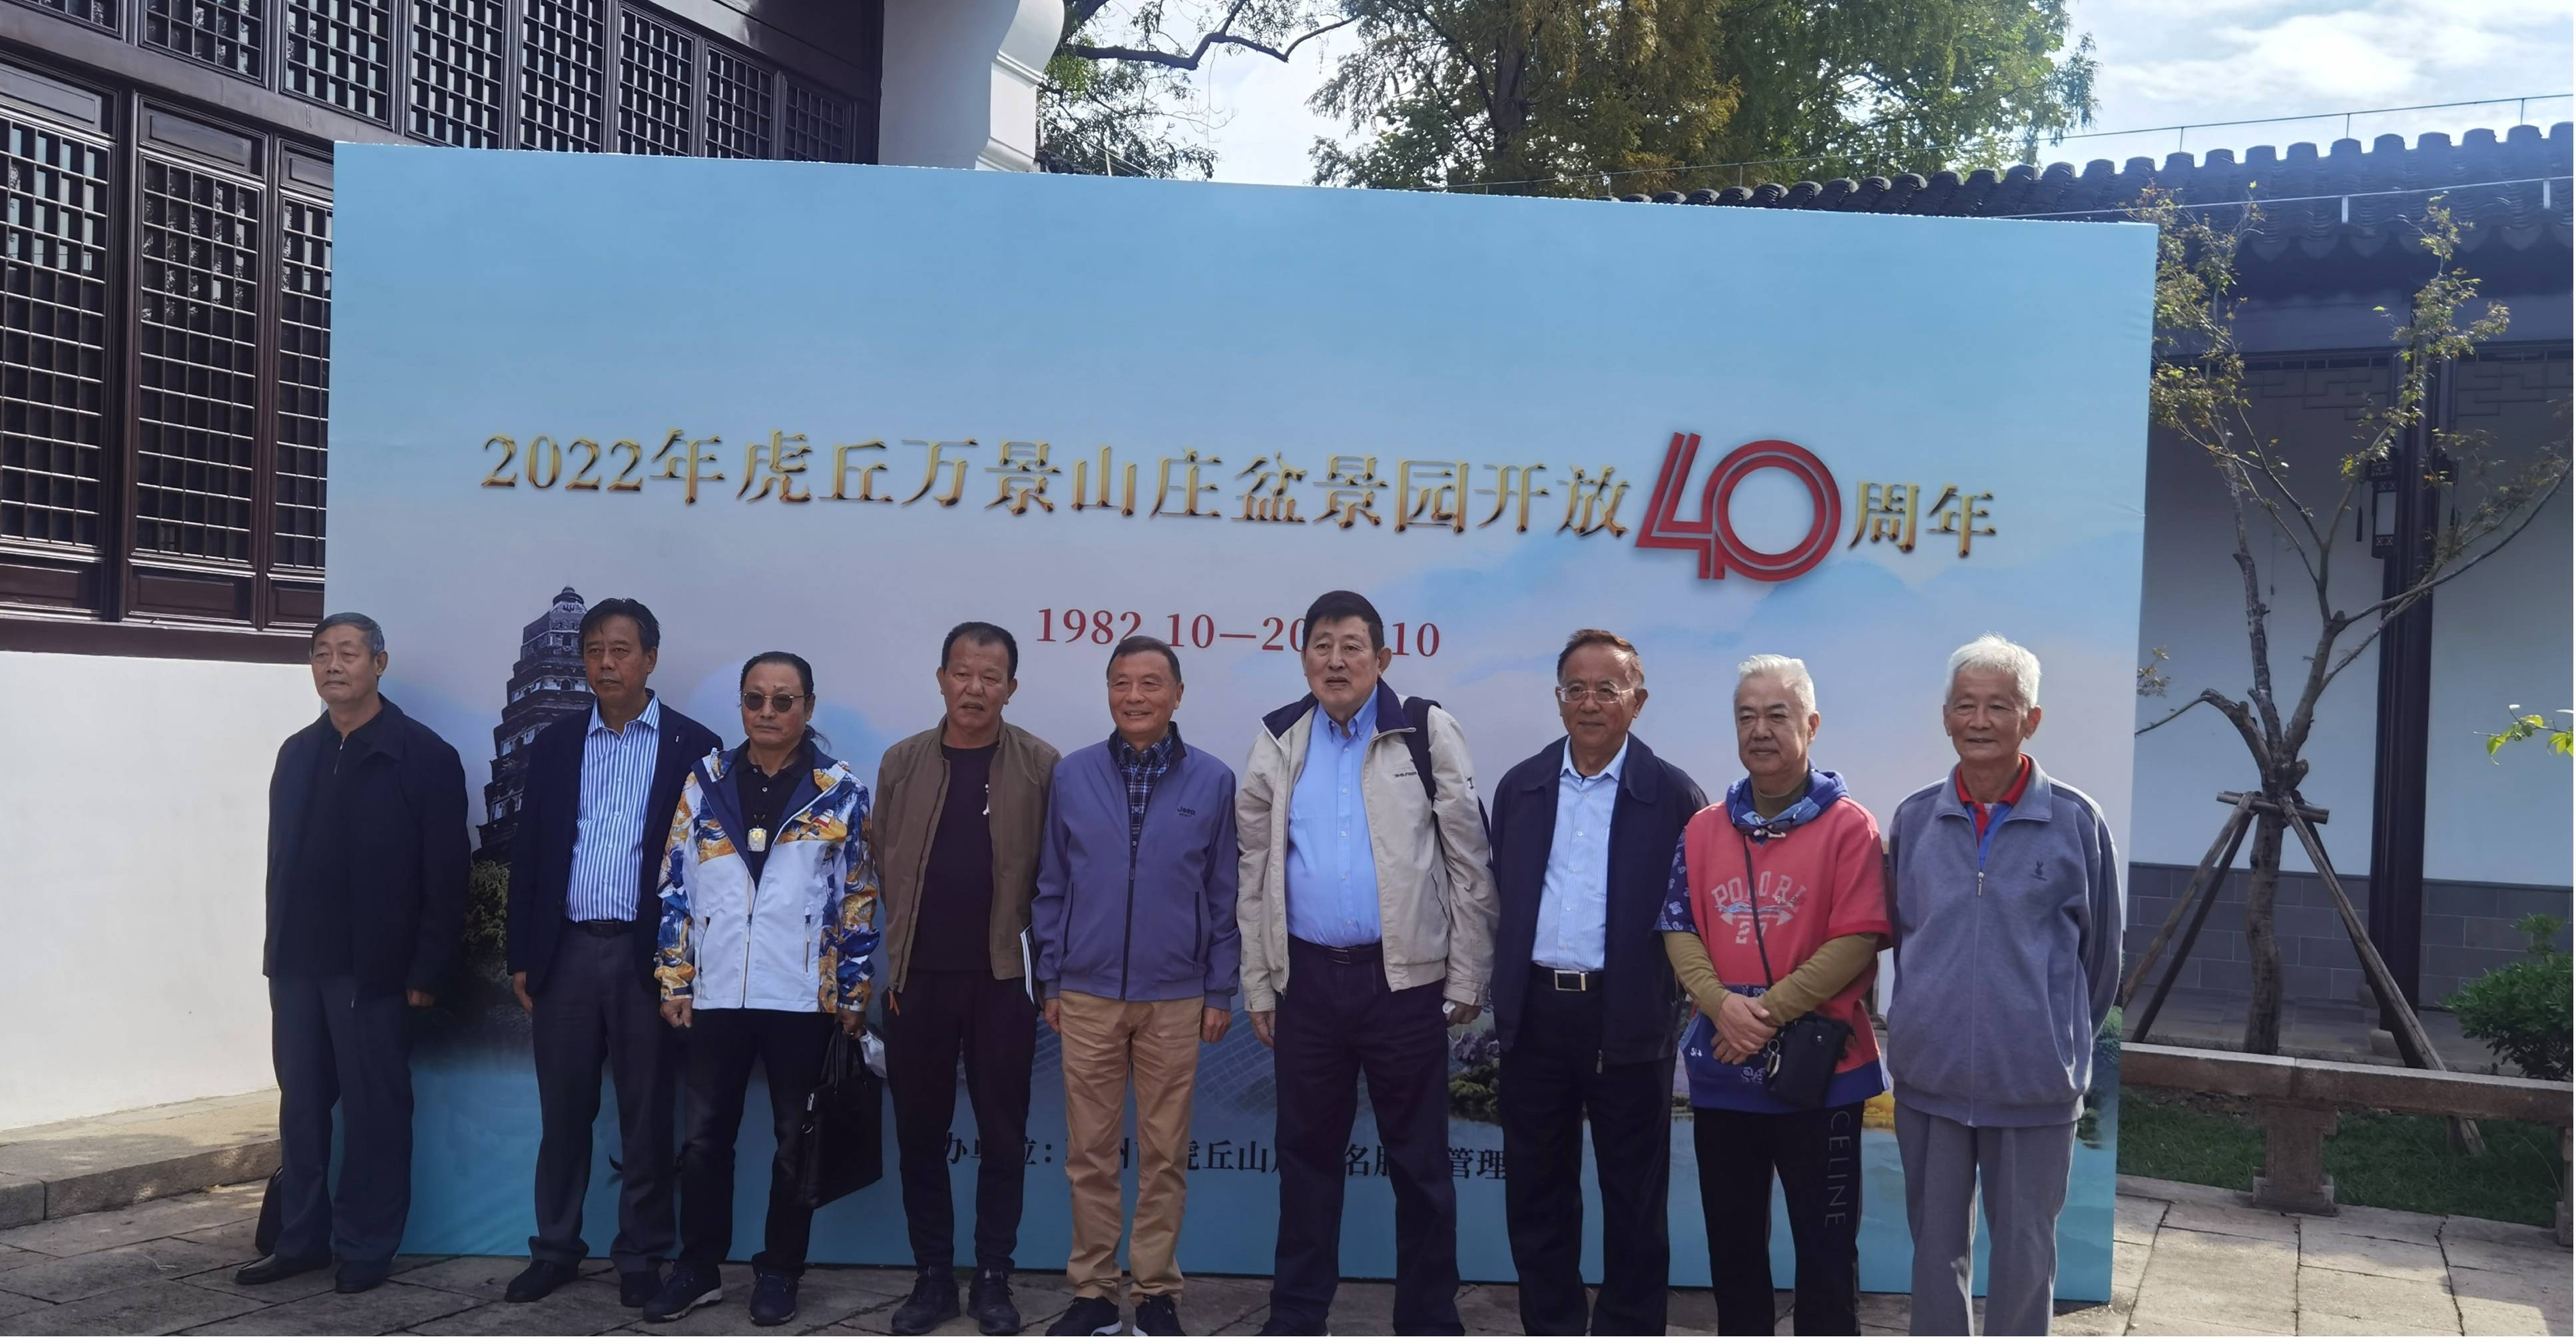 2022年虎丘万景山庄盆景园开放40周年 纪念活动成功举办